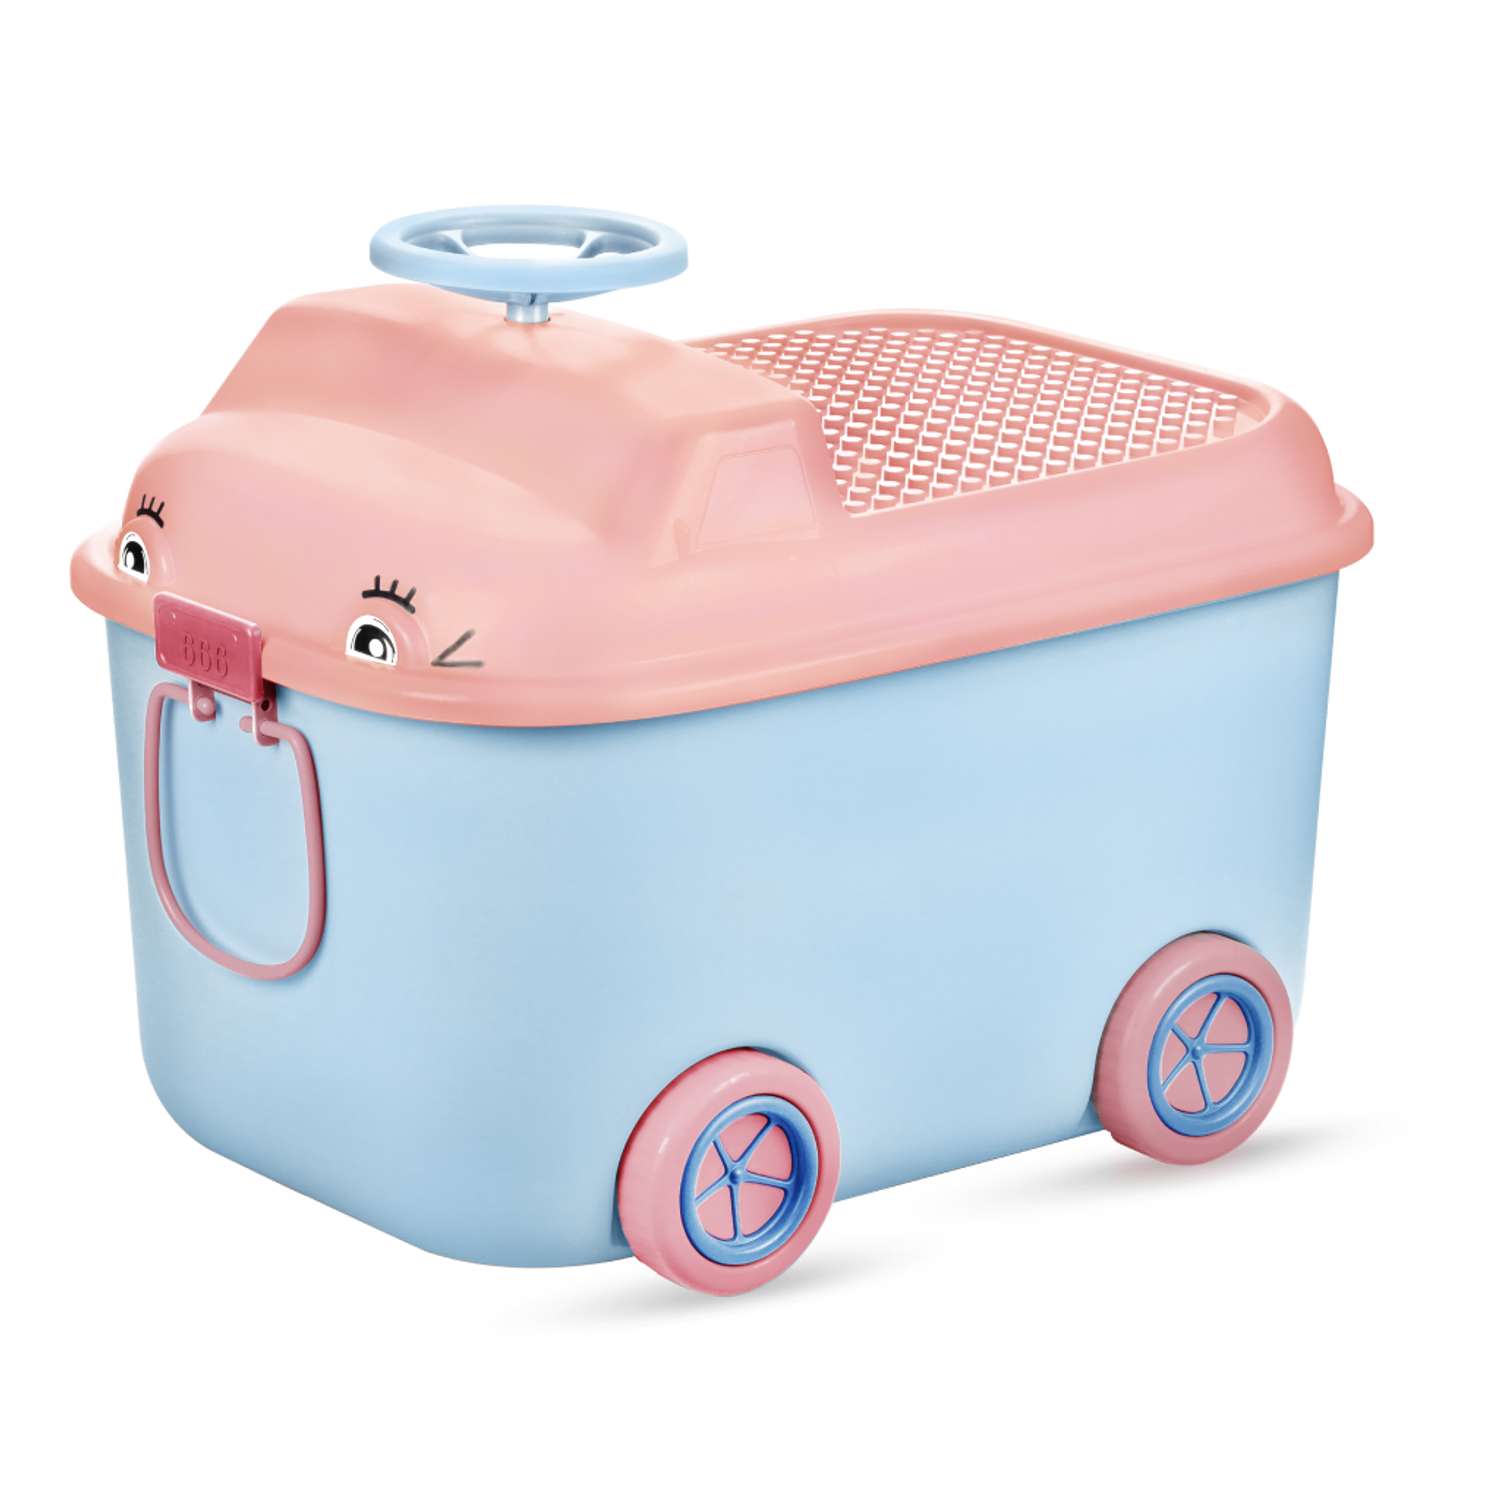 Ящик для хранения игрушек Solmax контейнер на колесиках 54х41.5х38 см голубой - фото 11